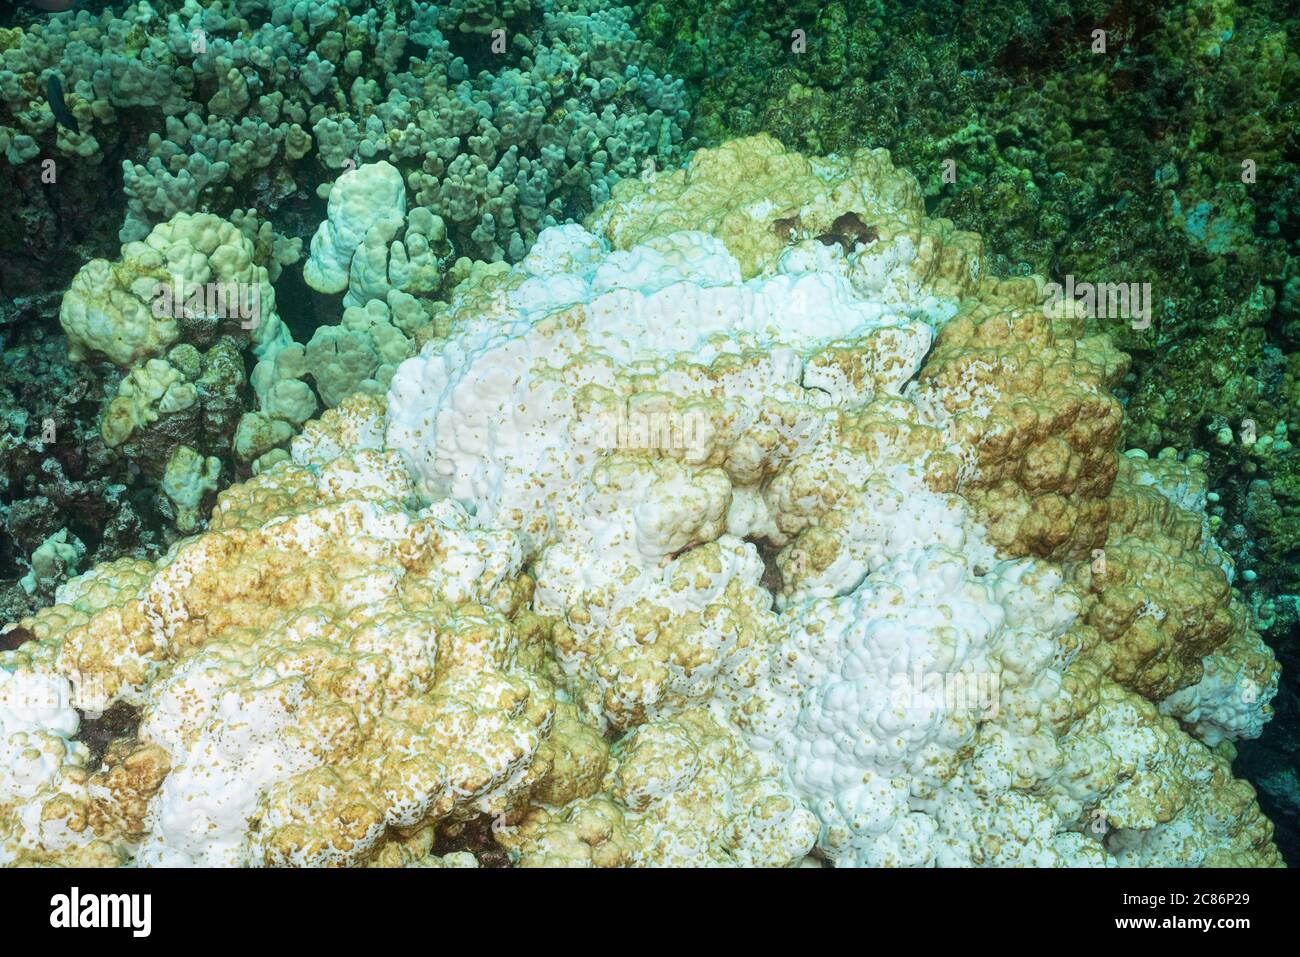 Algas incrustantes está empezando a crecer sobre una cabeza de coral lóbulos, Porites lobata, blanqueada por las temperaturas cálidas del mar durante el evento el Nino 2015, Hawai Foto de stock